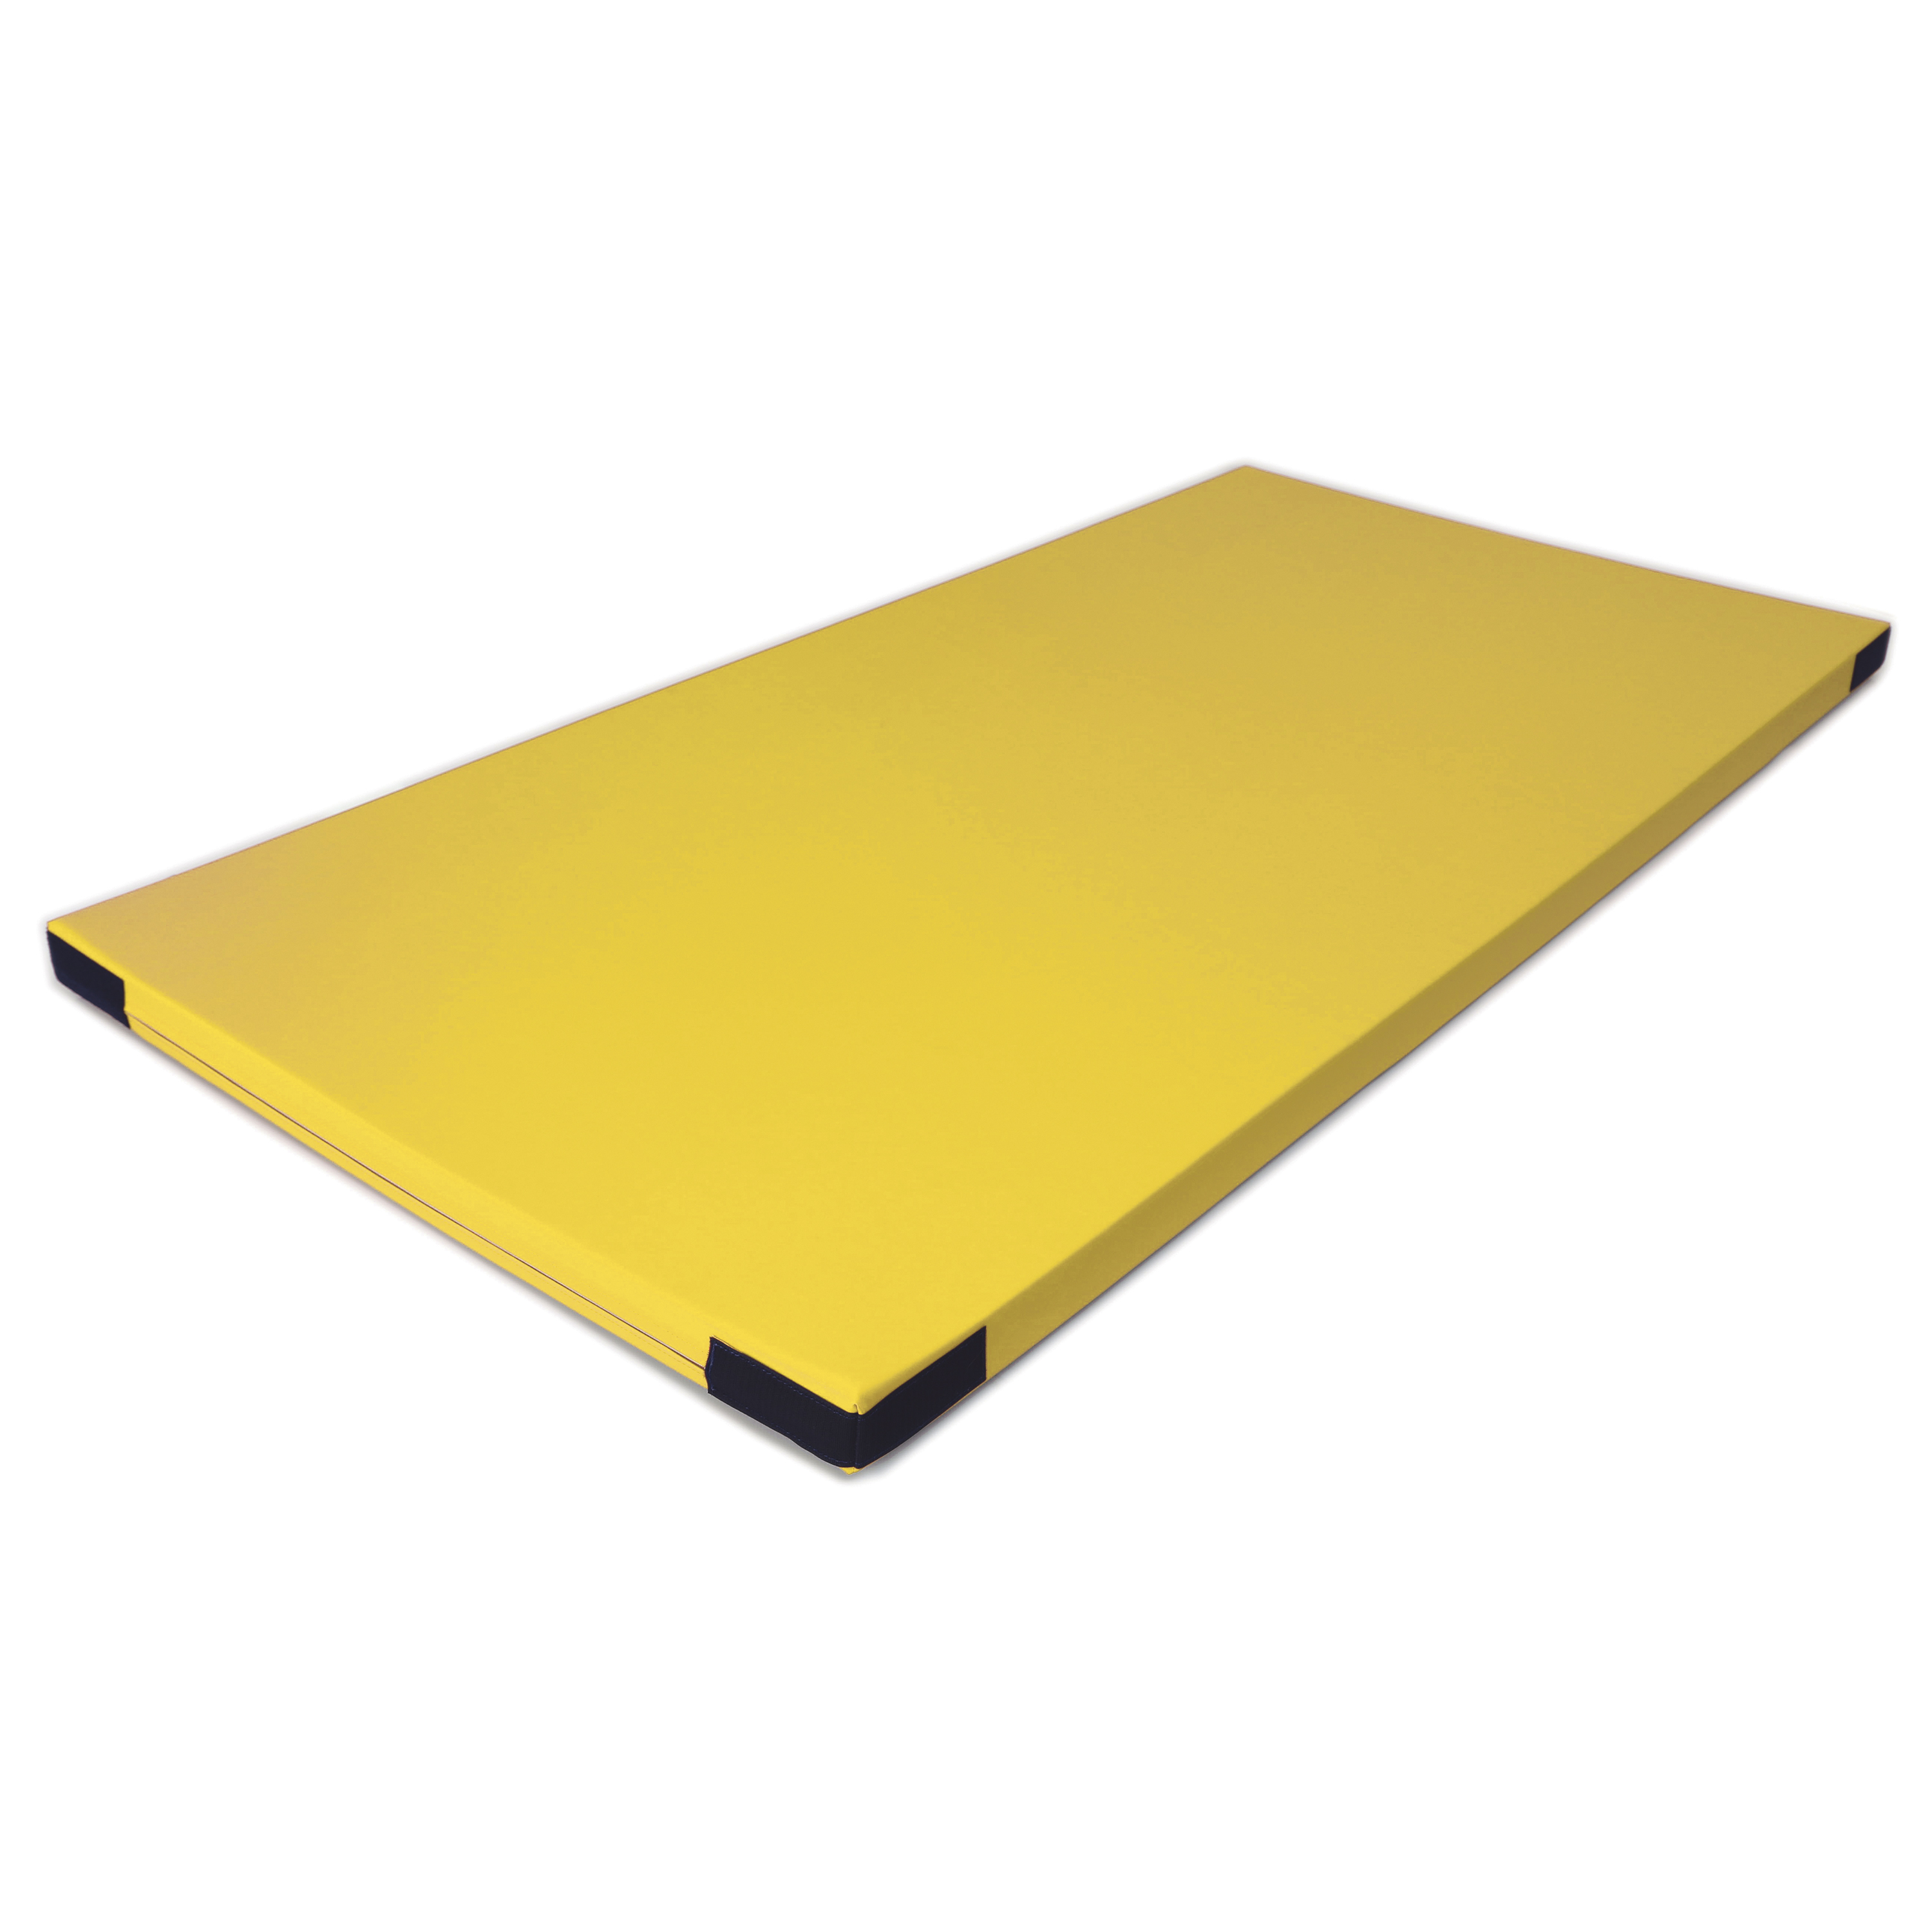 Fallschutzmatte Superleicht 'gelb' Klett, 200 x 100 cm